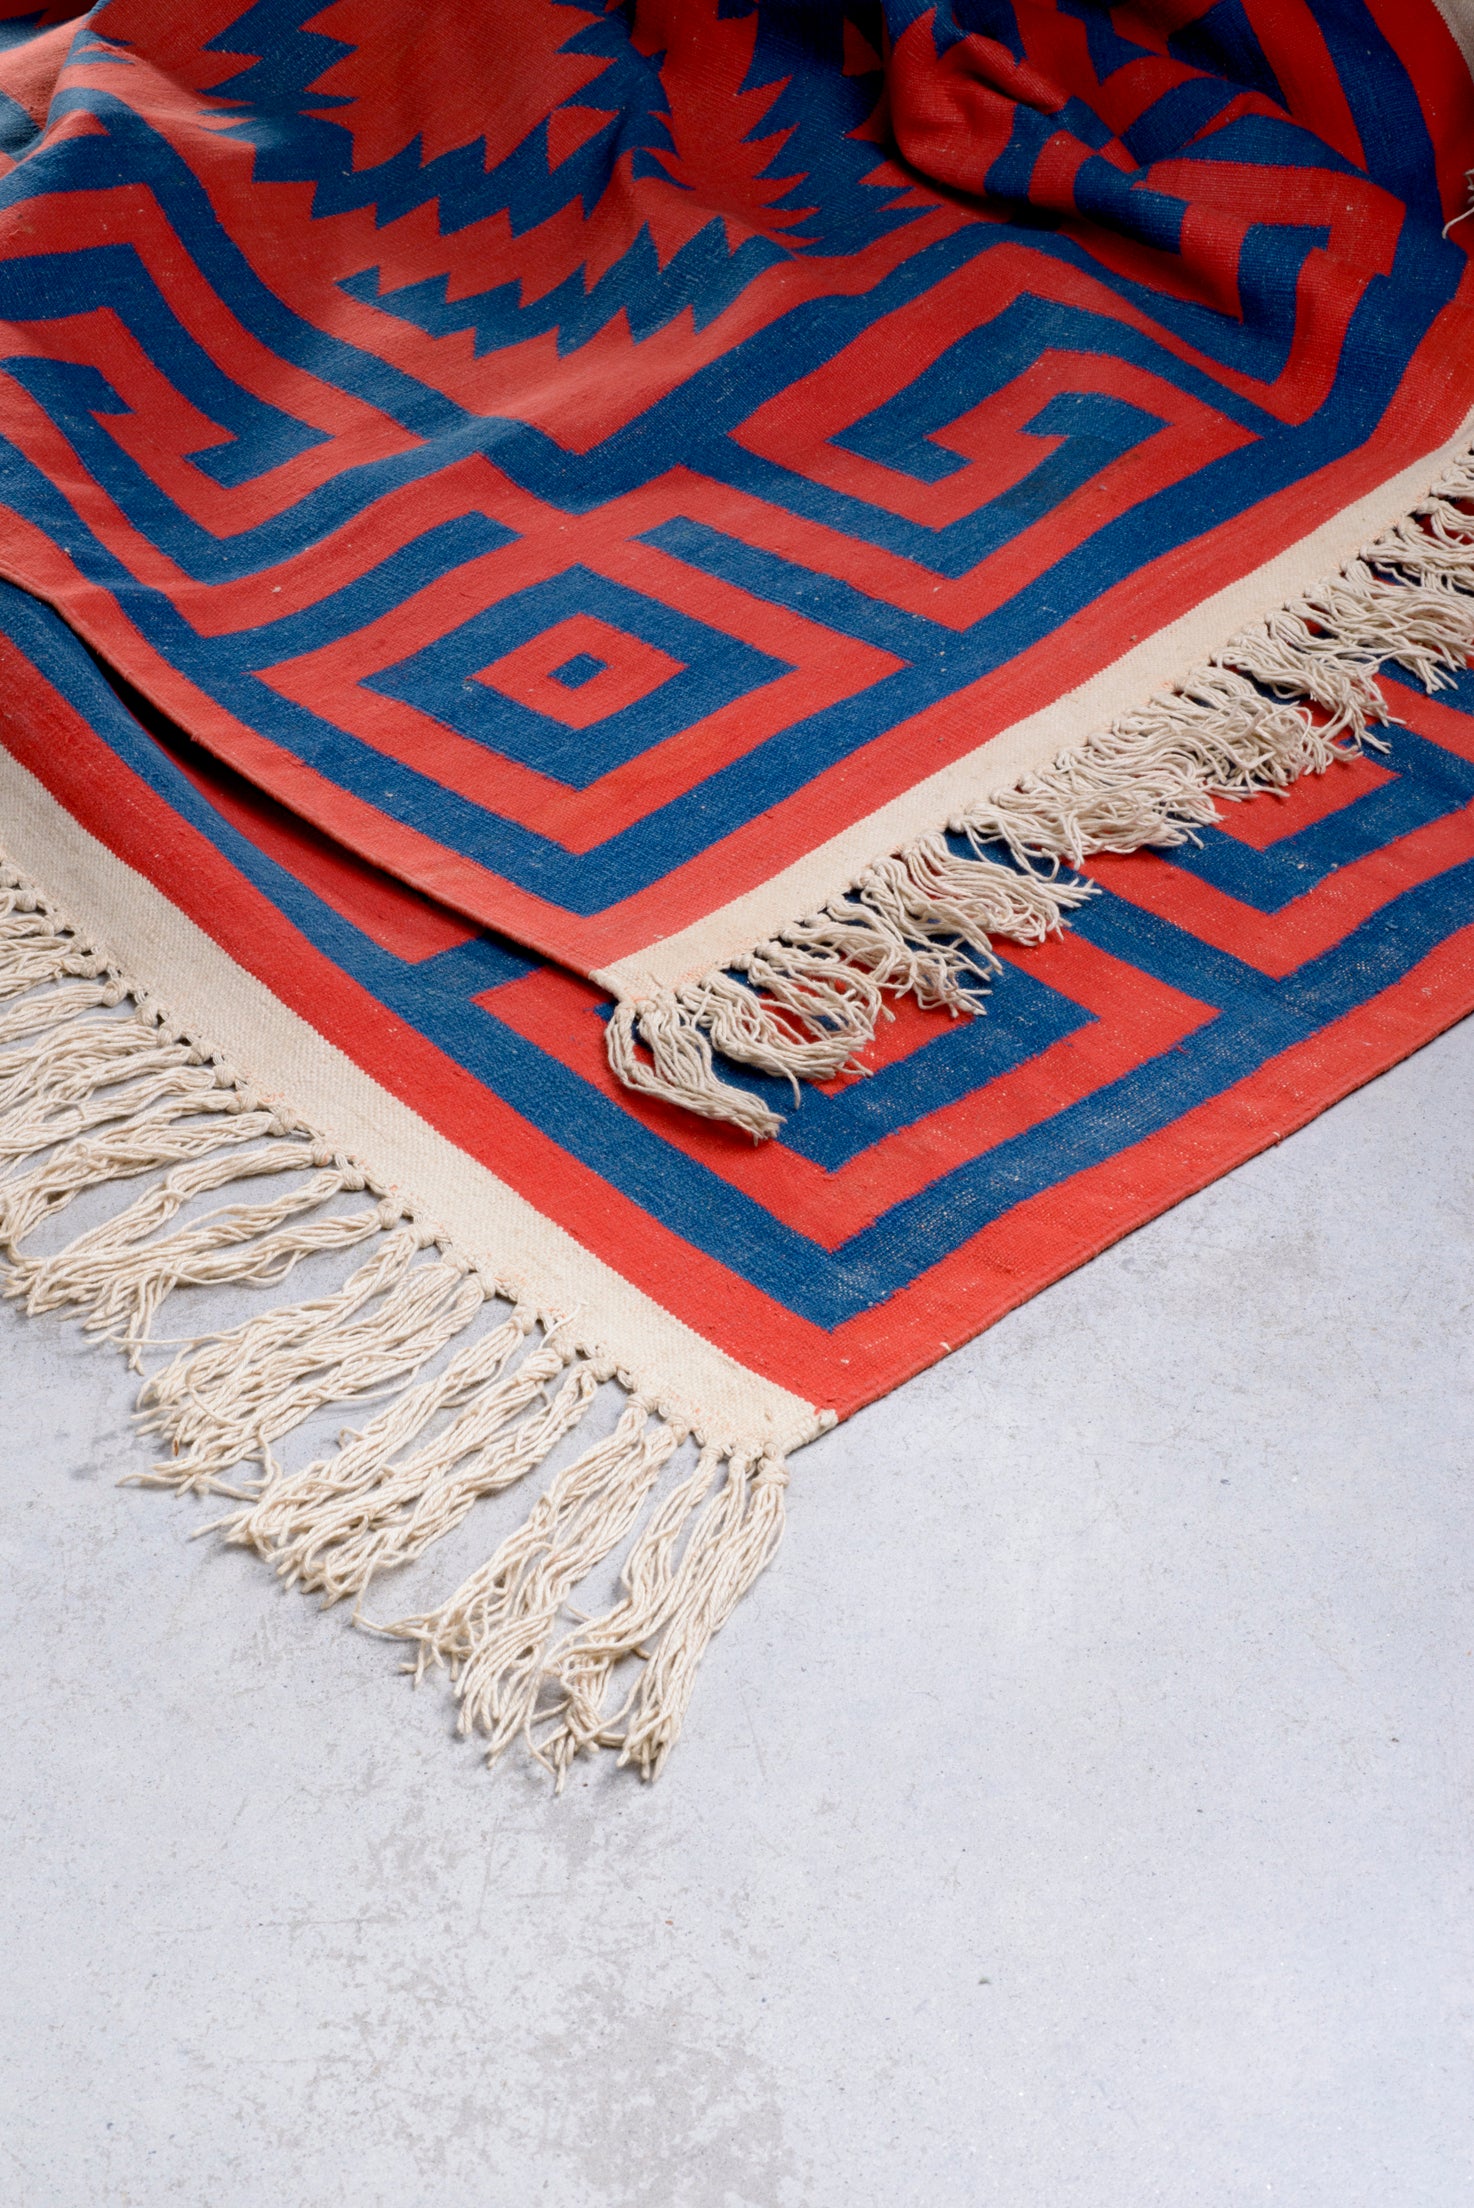 Antique carpet - India | 486 x 456 cm